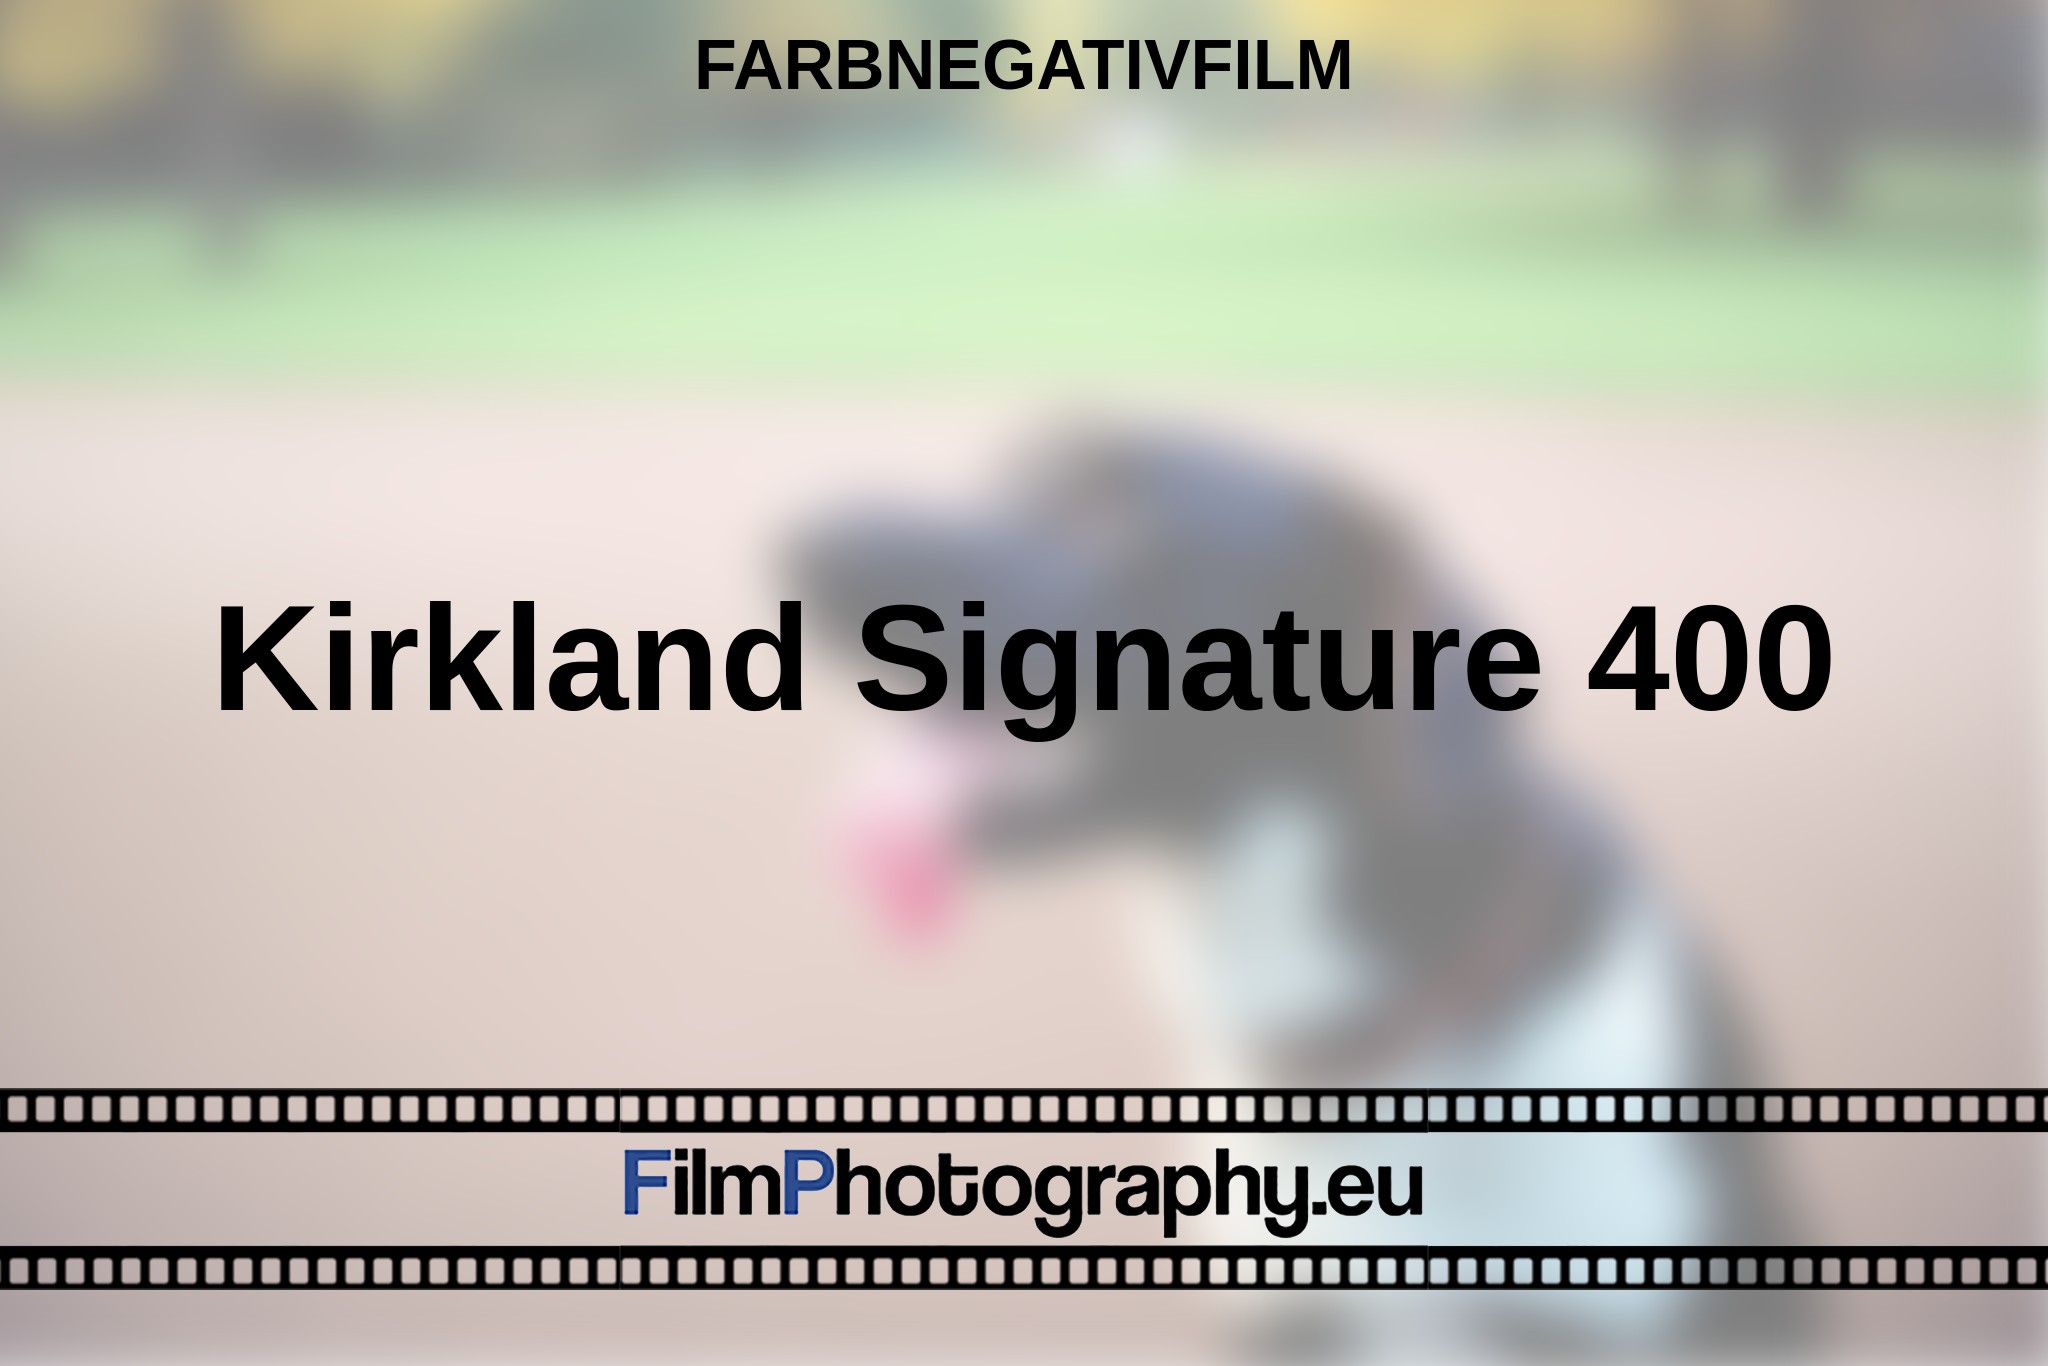 kirkland-signature-400-farbnegativfilm-bnv.jpg